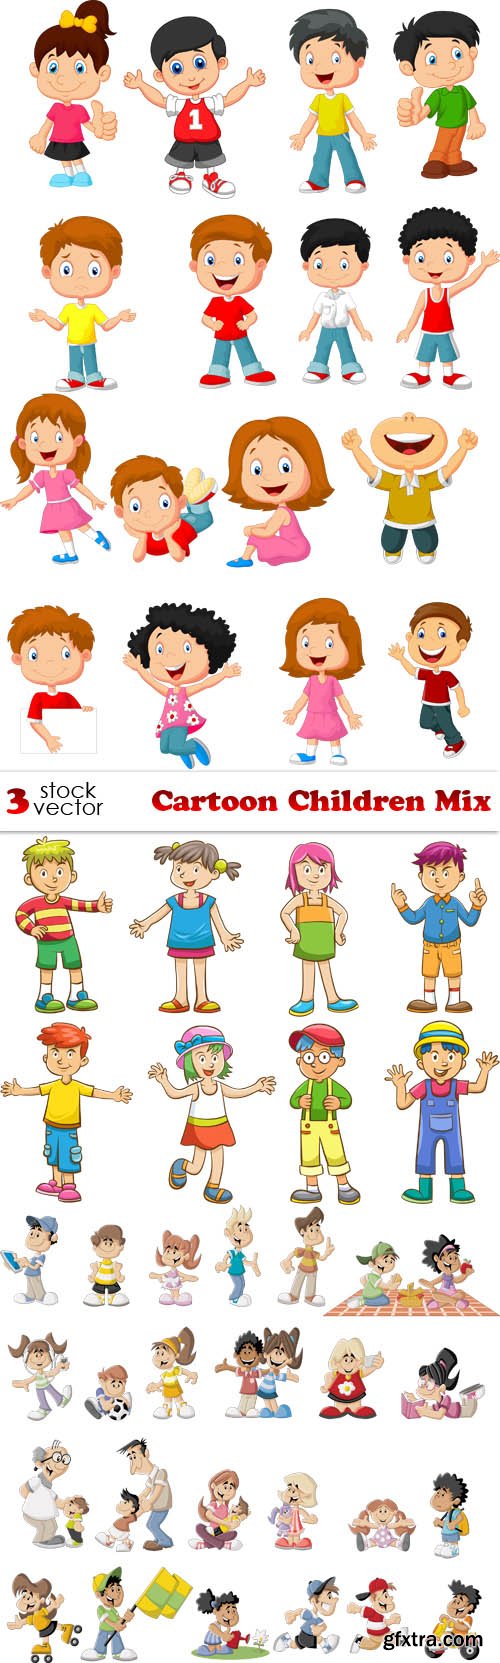 Vectors - Cartoon Children Mix 3